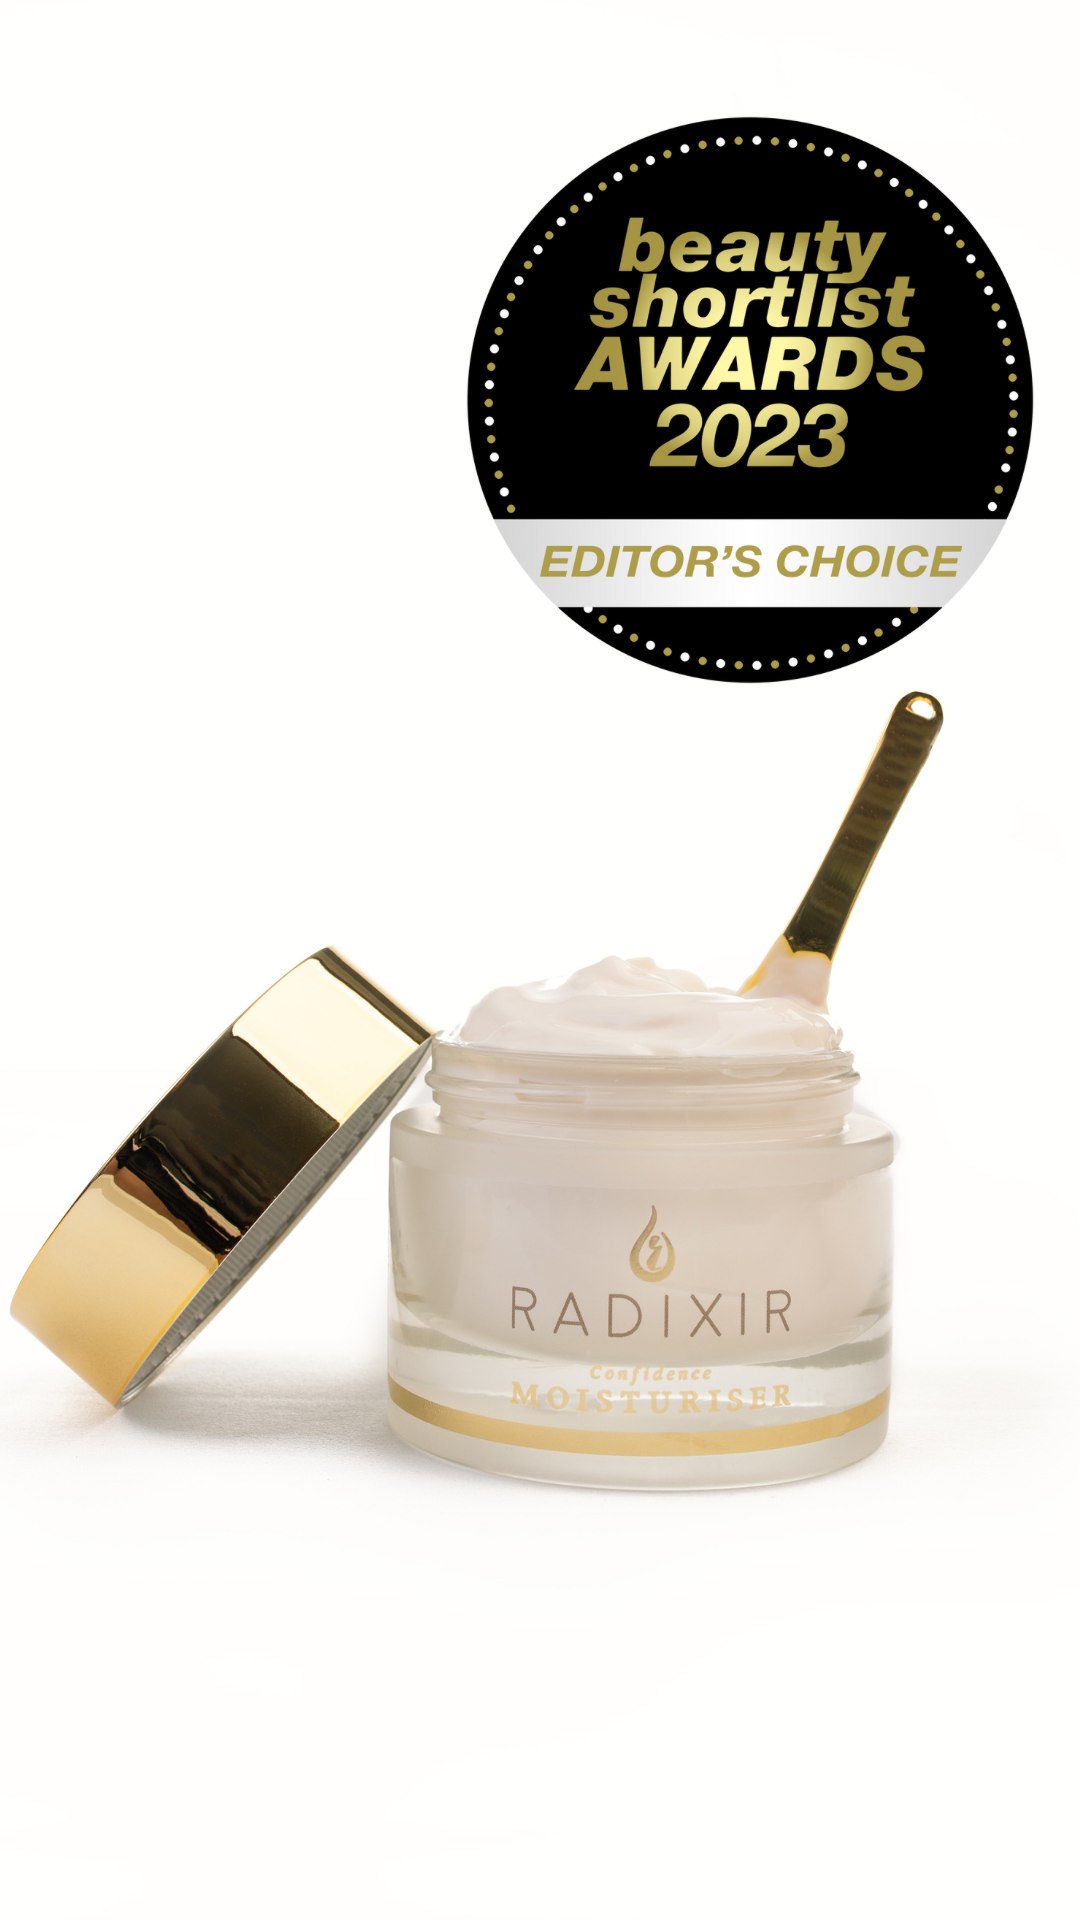 Radixir Confidence moisturizer with beauty short list award 